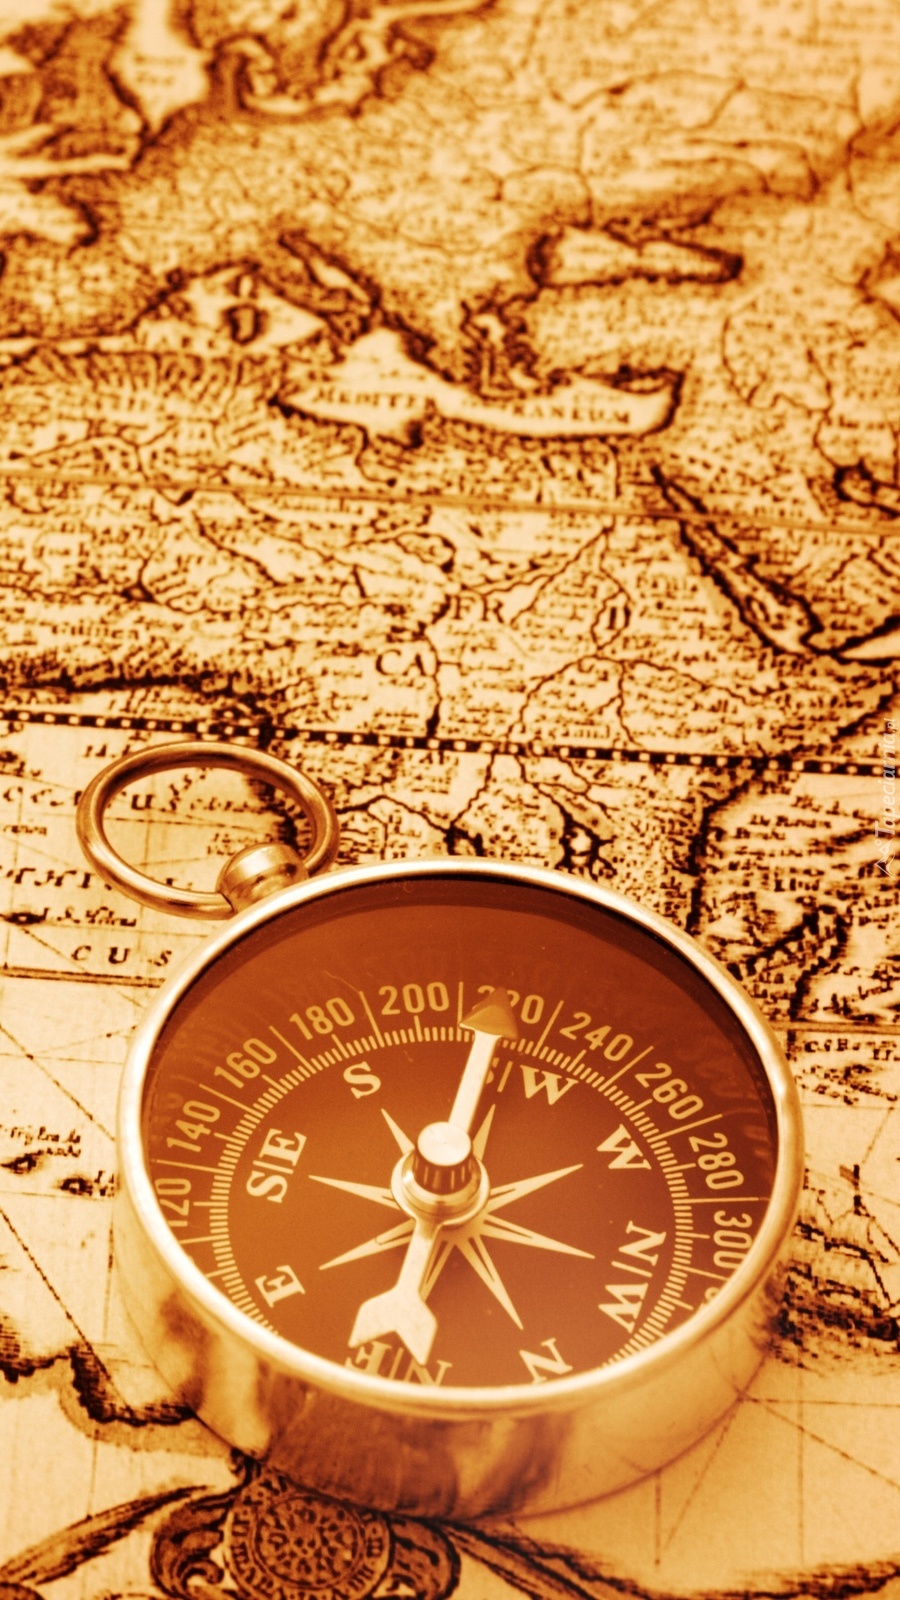 A teraz z mapą i kompasem można wyruszyć w świat